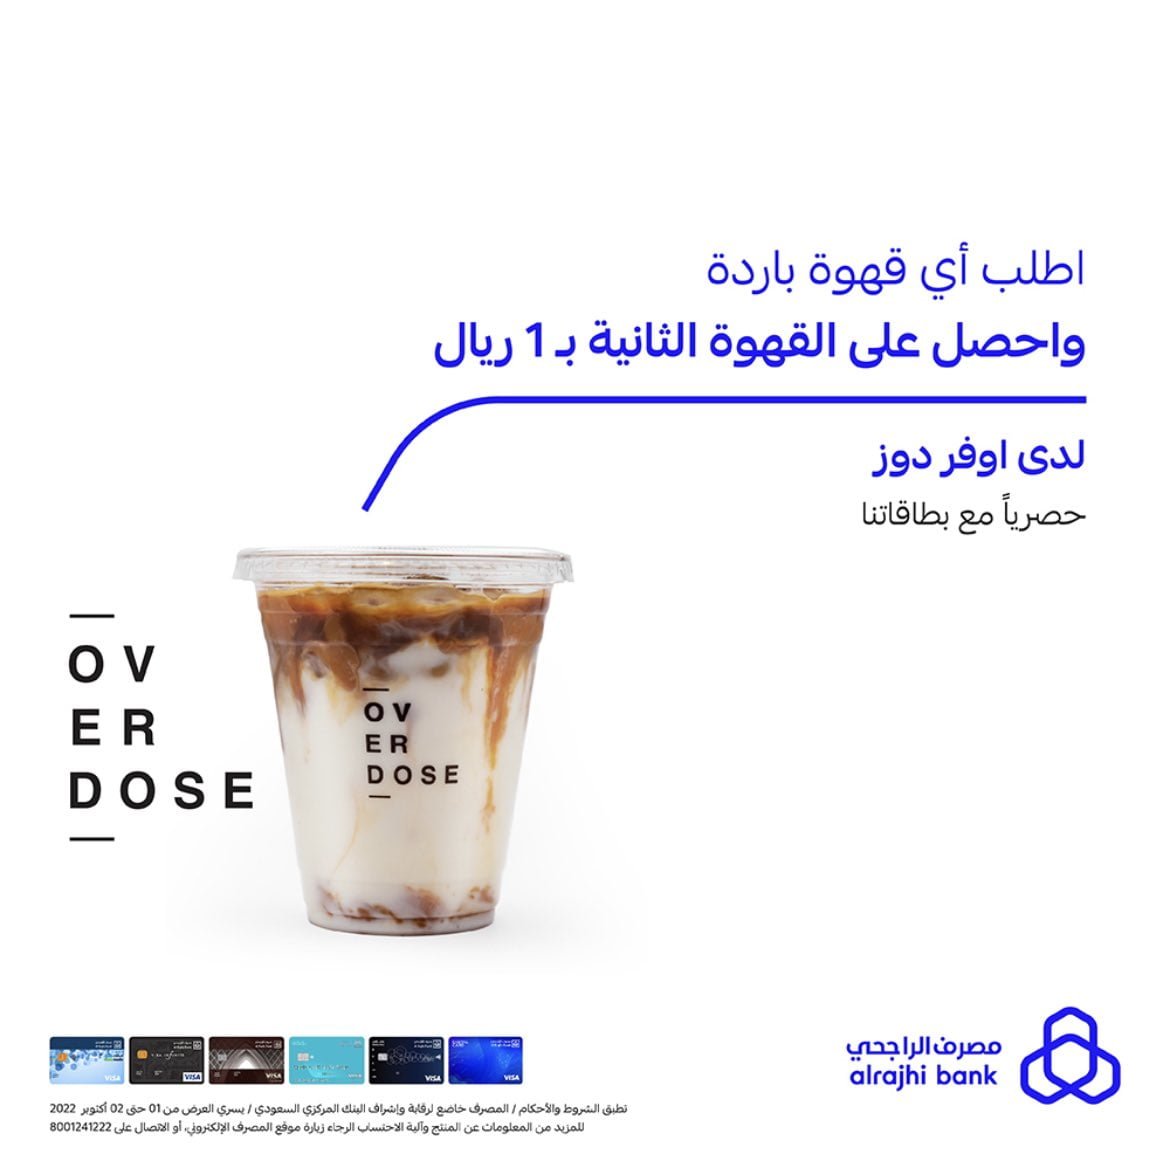 Fd XzoKWQAEdfHi - عروض يوم القهوة العالمي | عروض كافيهات السعودية